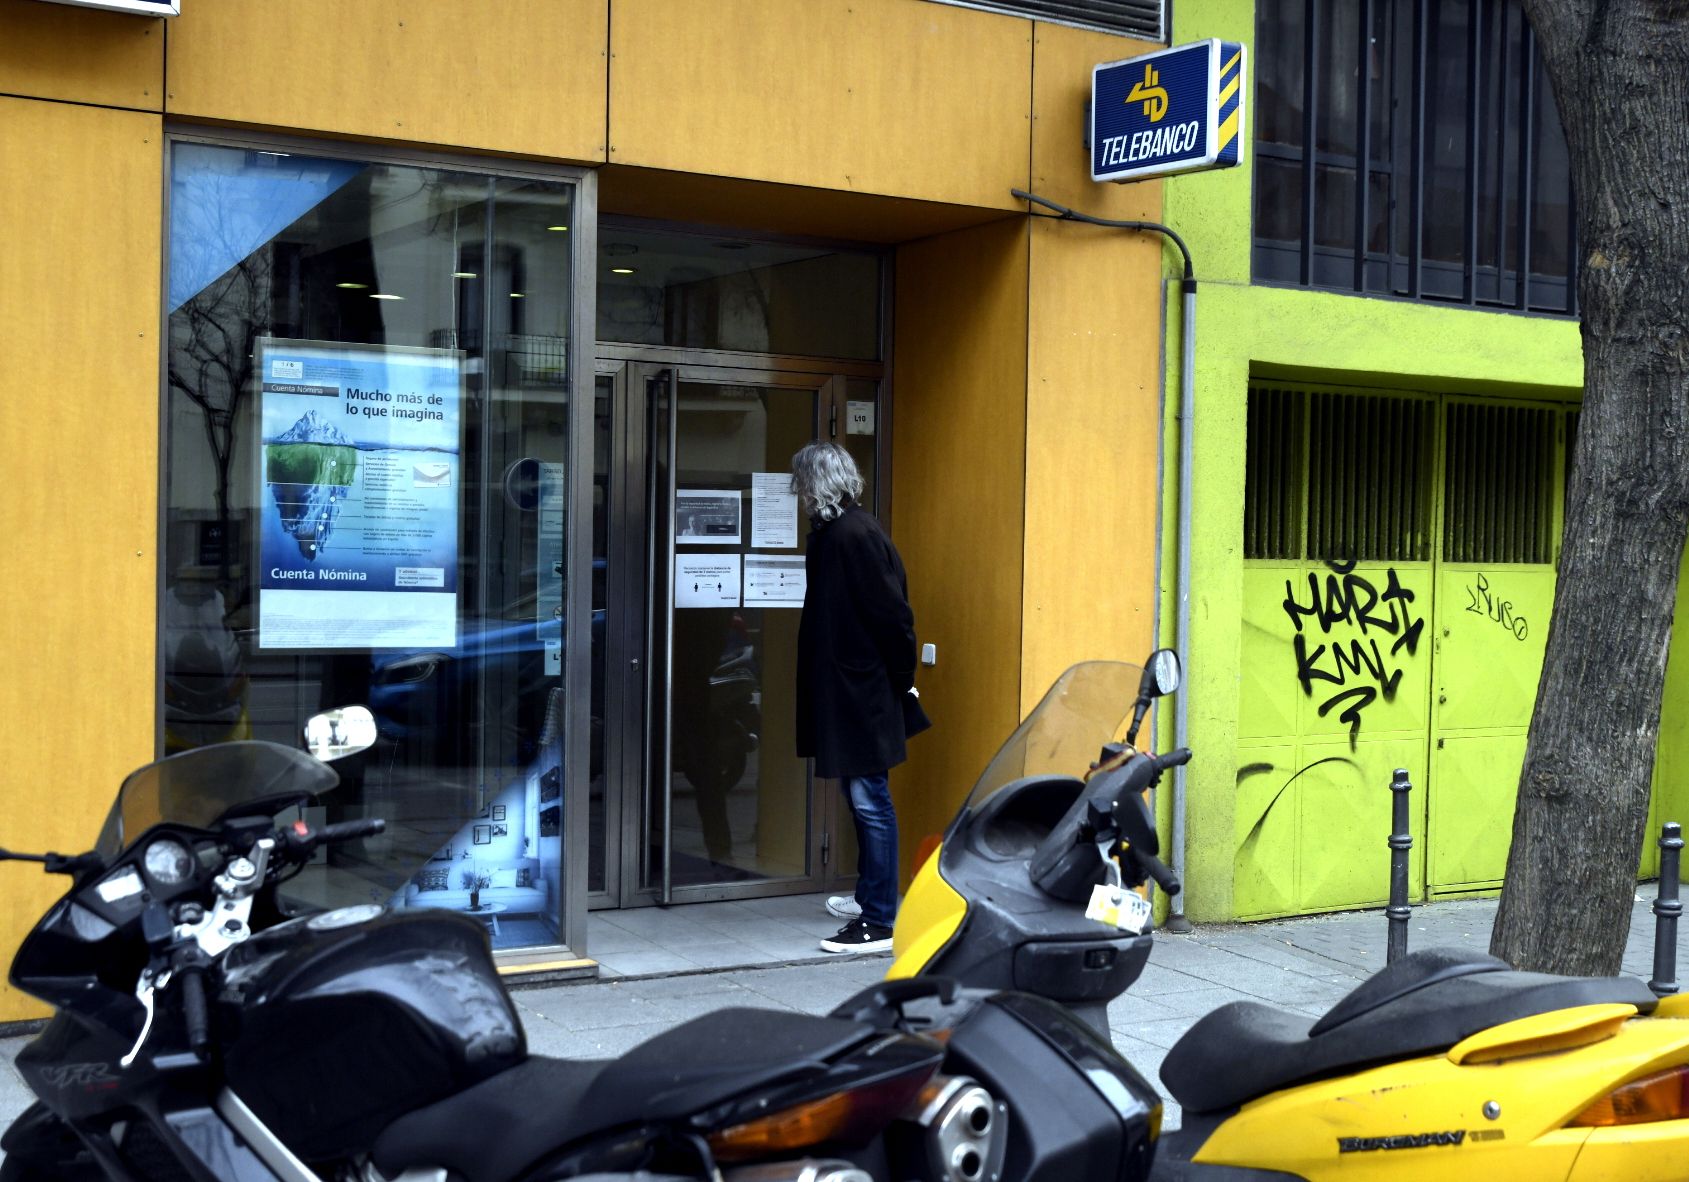 La banca española cerró una de cada cinco oficinas con la pandemia y redujo su red a mínimos de 1976